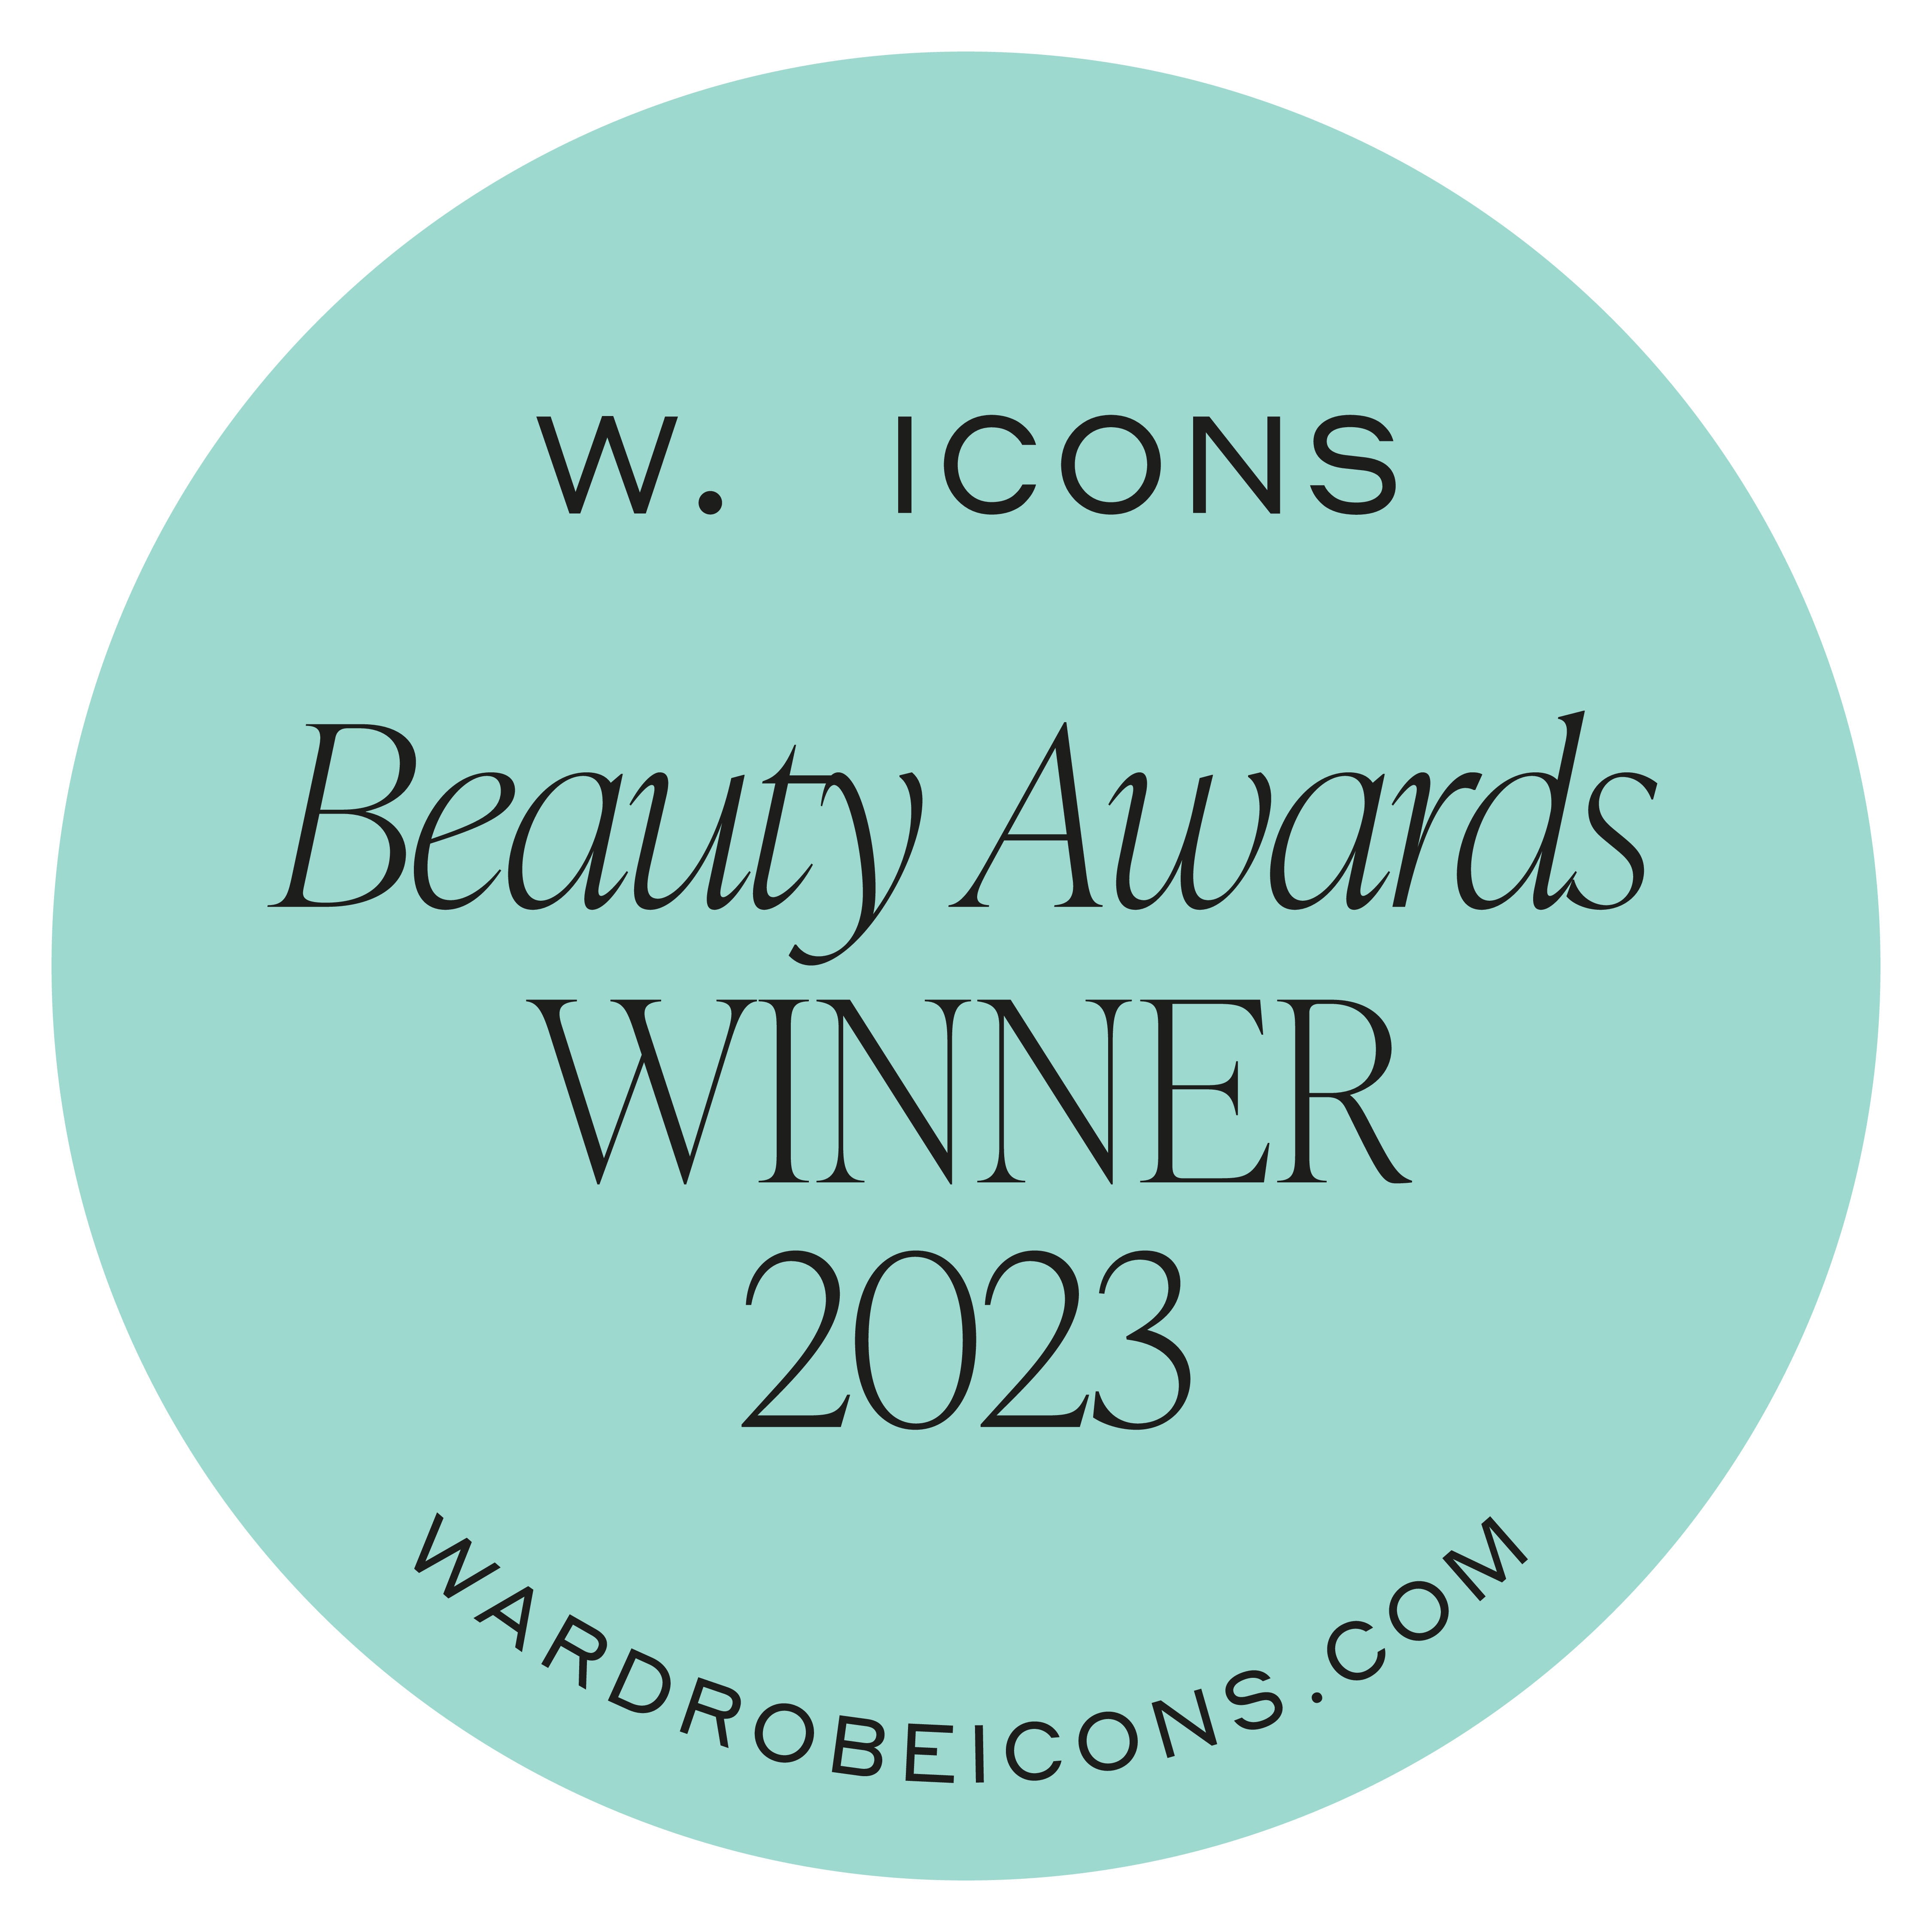 Wardrobe Icons Beauty Awards Winner 2023 award